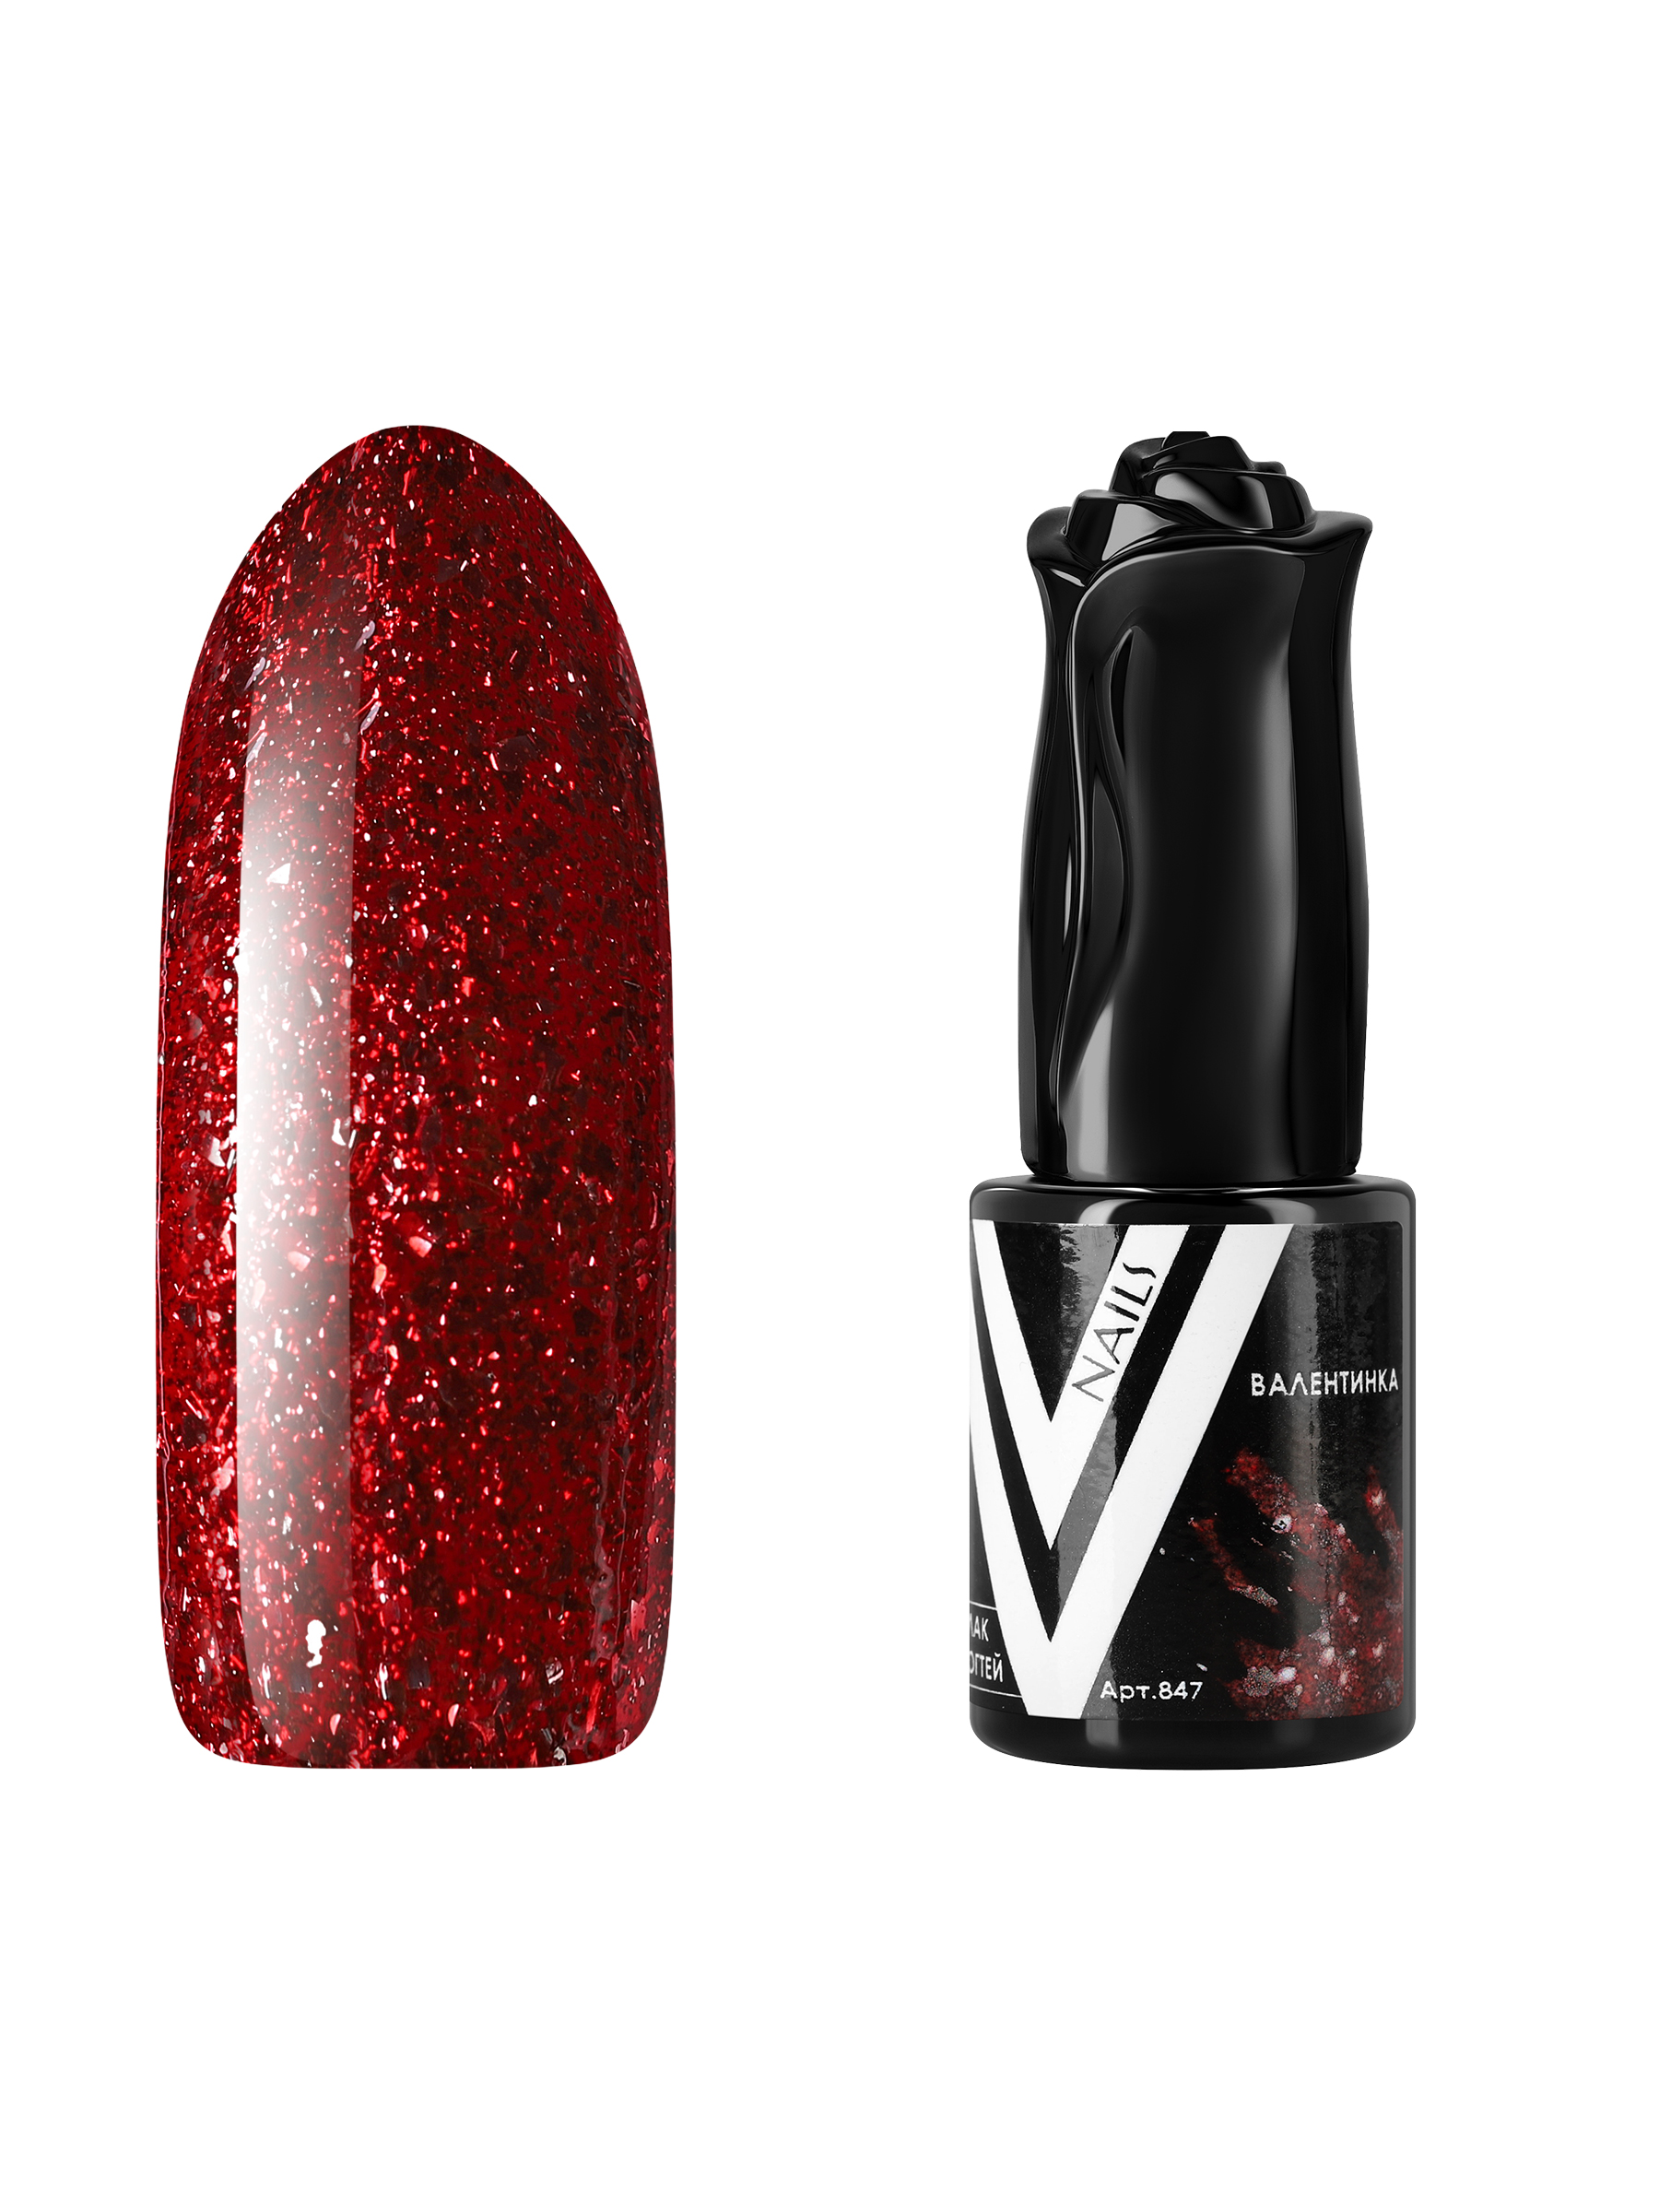 Гель-лак для ногтей с блестками Vogue Nails плотный, насыщенный, темный, красный, 10 мл гель лак с блестками vogue nails кошачий глаз магнитный плотный темный серый 10 мл